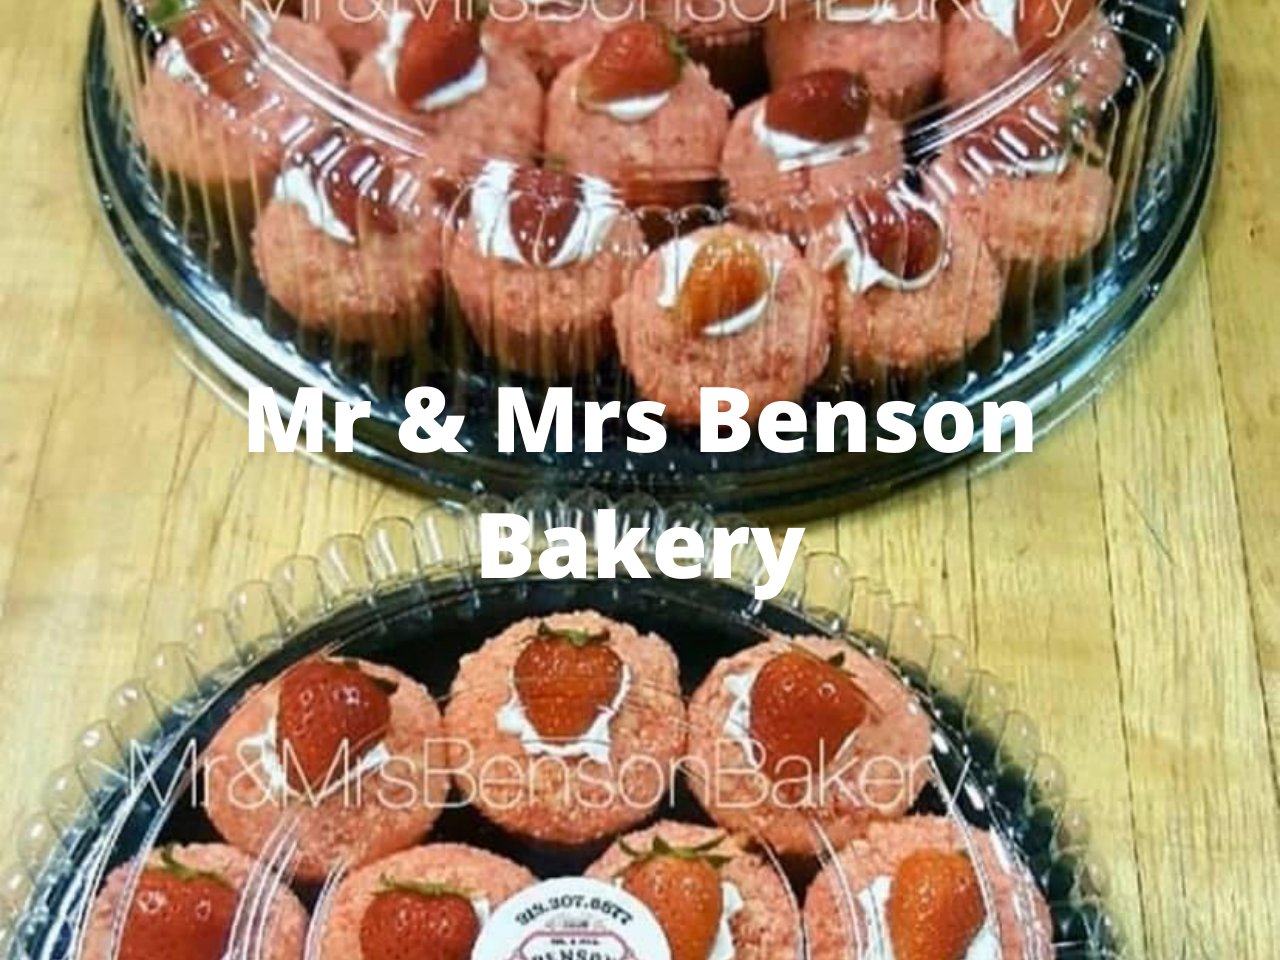 Mr & Mrs Benson Baker